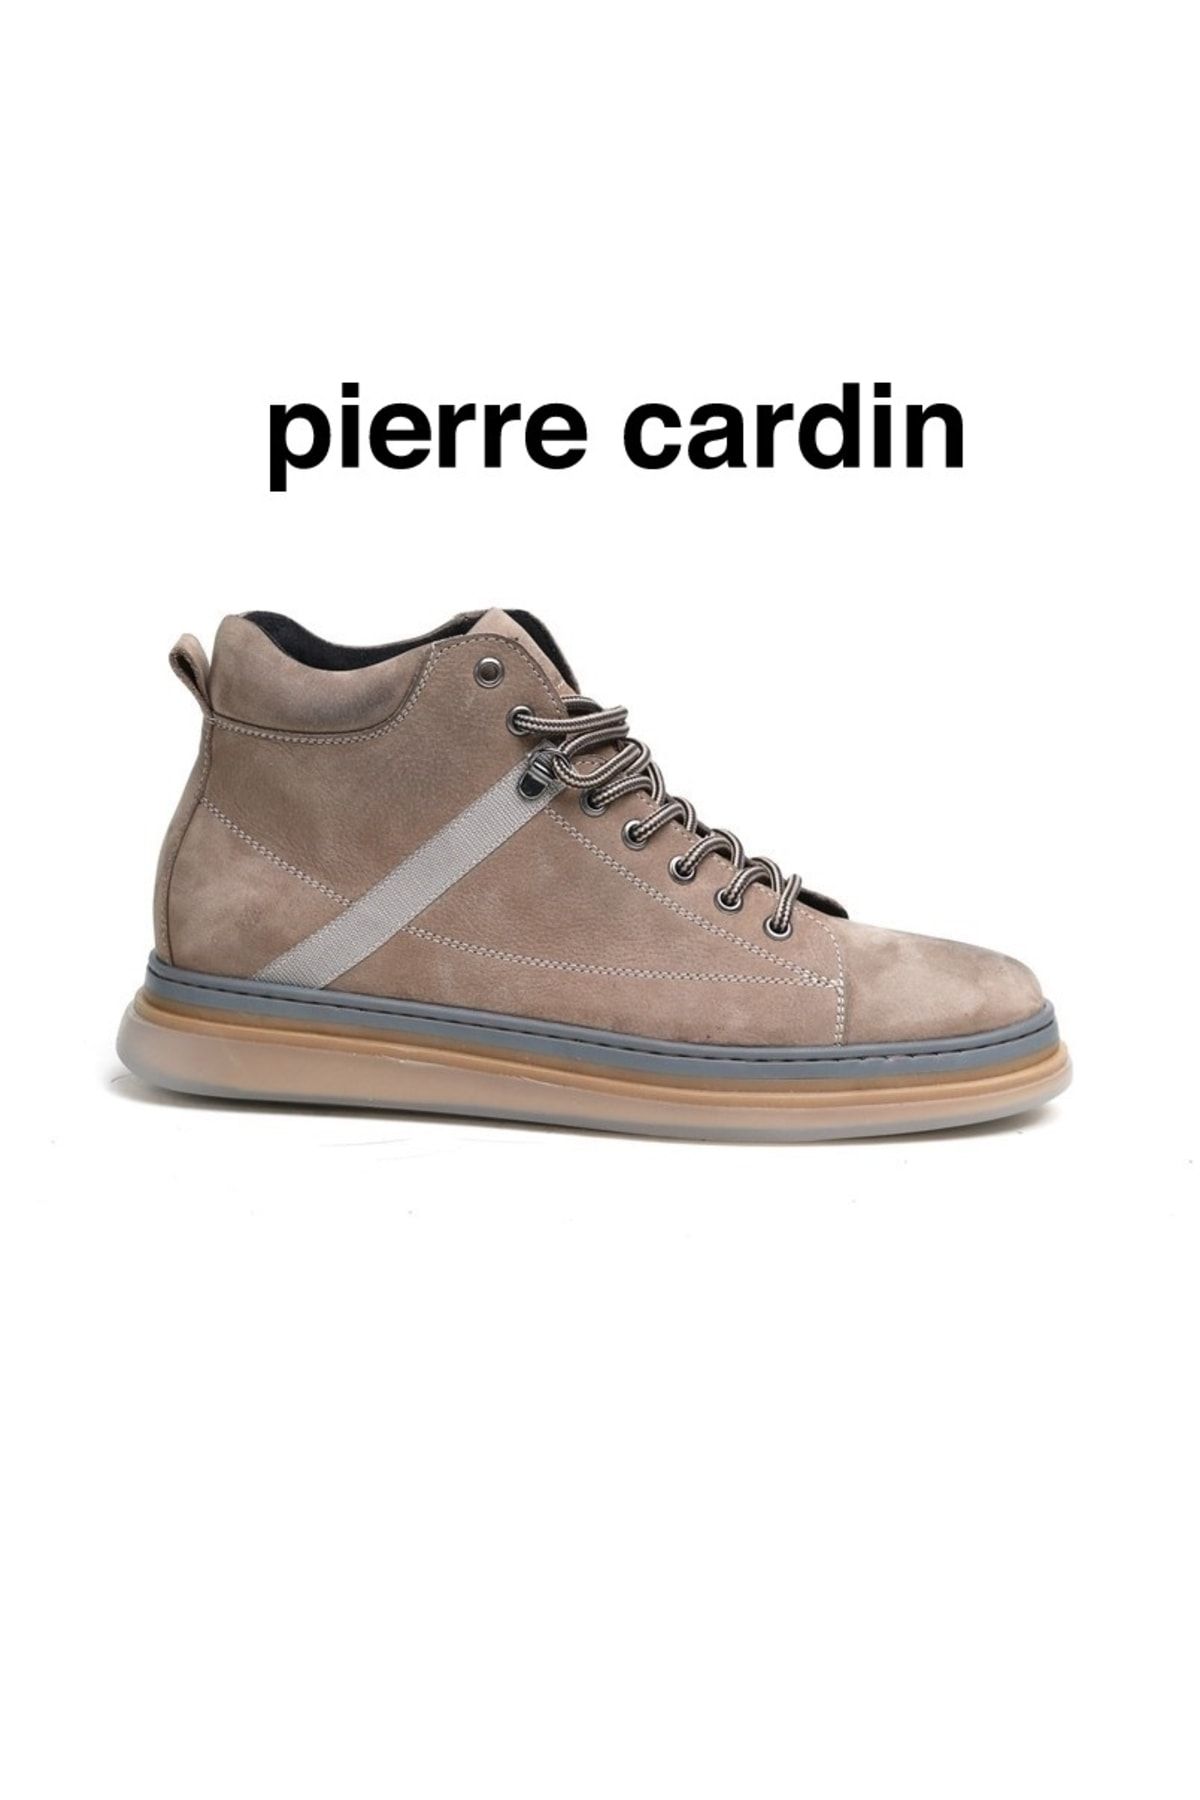 Pierre Cardin Hakiki Deri Kum Renk Fashıon Casual Erkek Günlük Bot